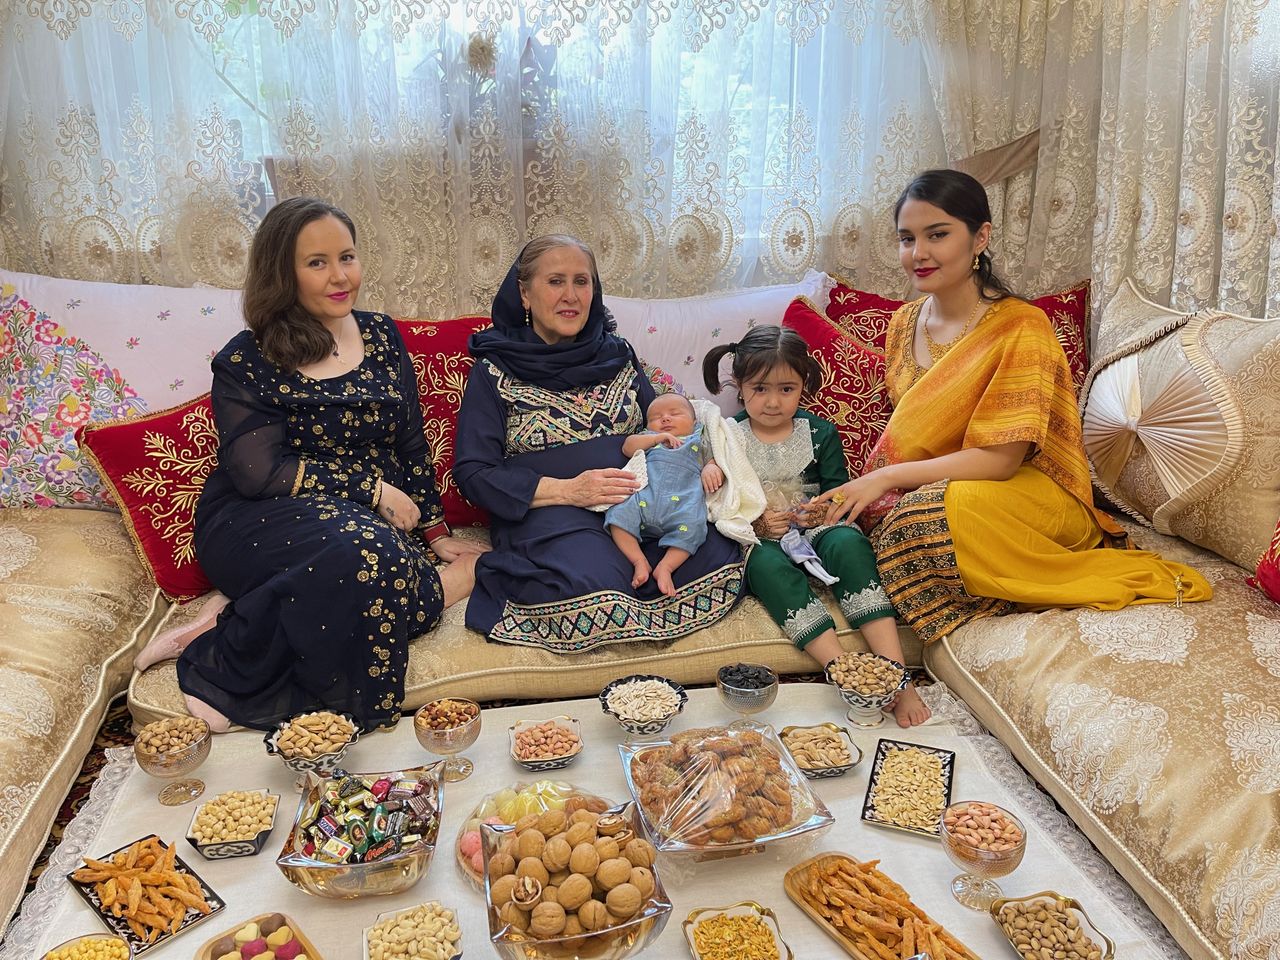 Frishta z mamą, pedagożką Zakiją Kargar, Smyrną i Marsem (wkrótce po urodzeniu) oraz Sahar, czyli swoją szwagierką, nowo poślubioną żoną Baktasha